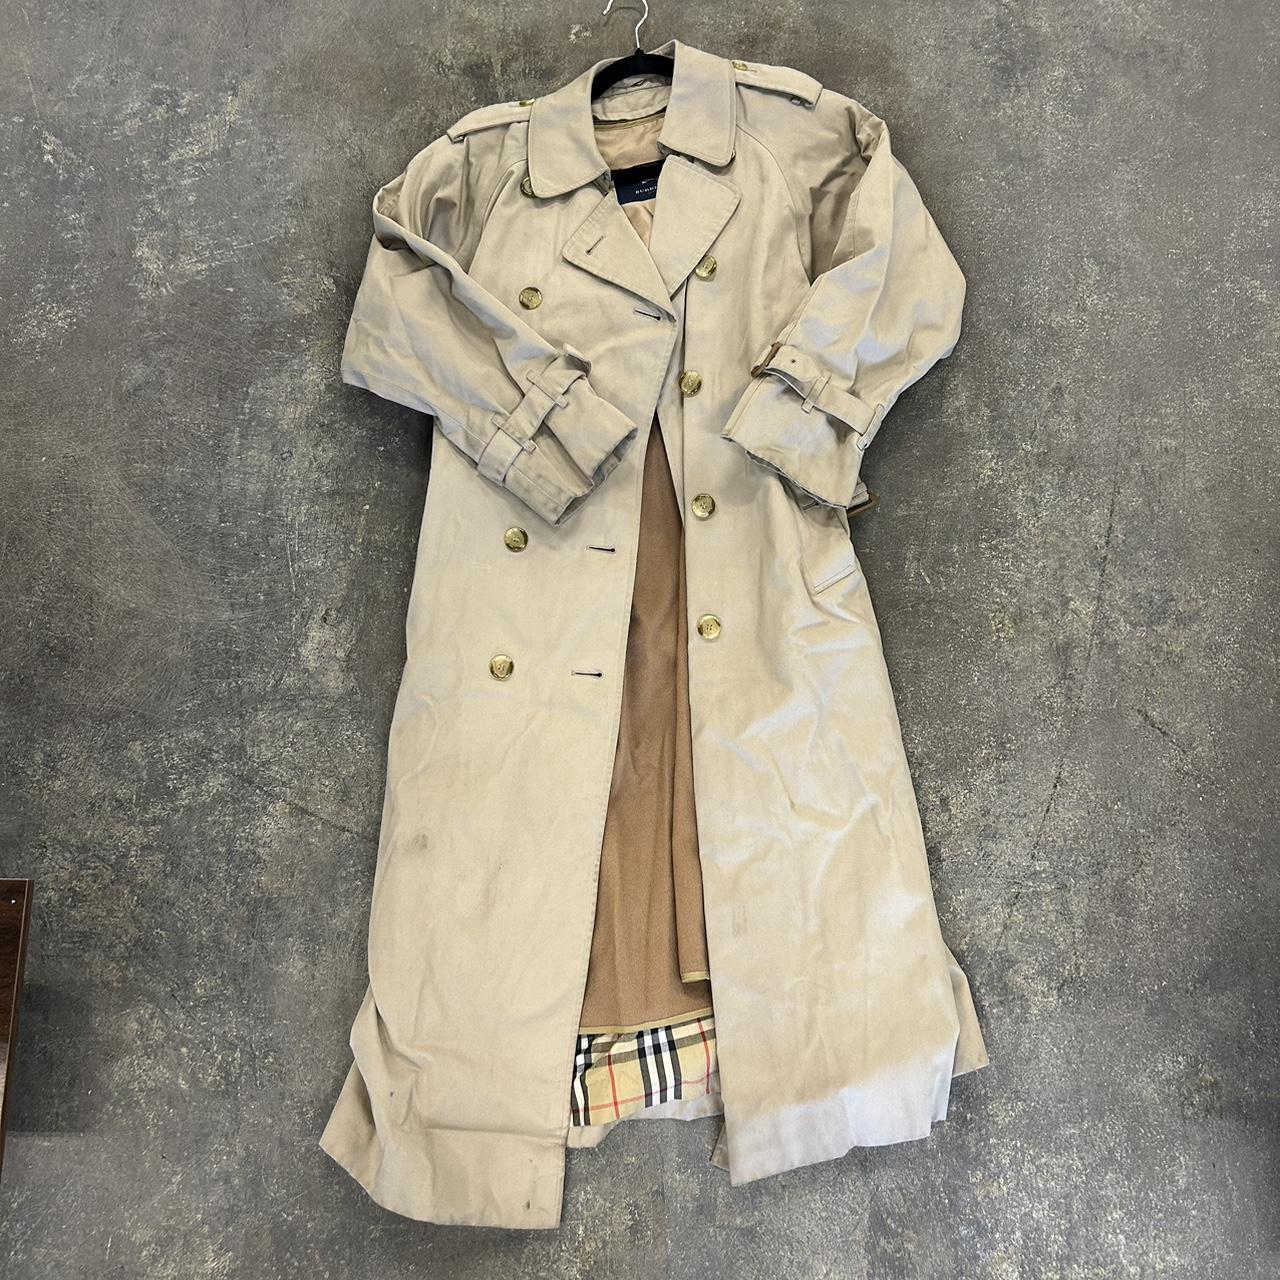 Vintage Women’s Burberry Trench coat (Just needs to... - Depop